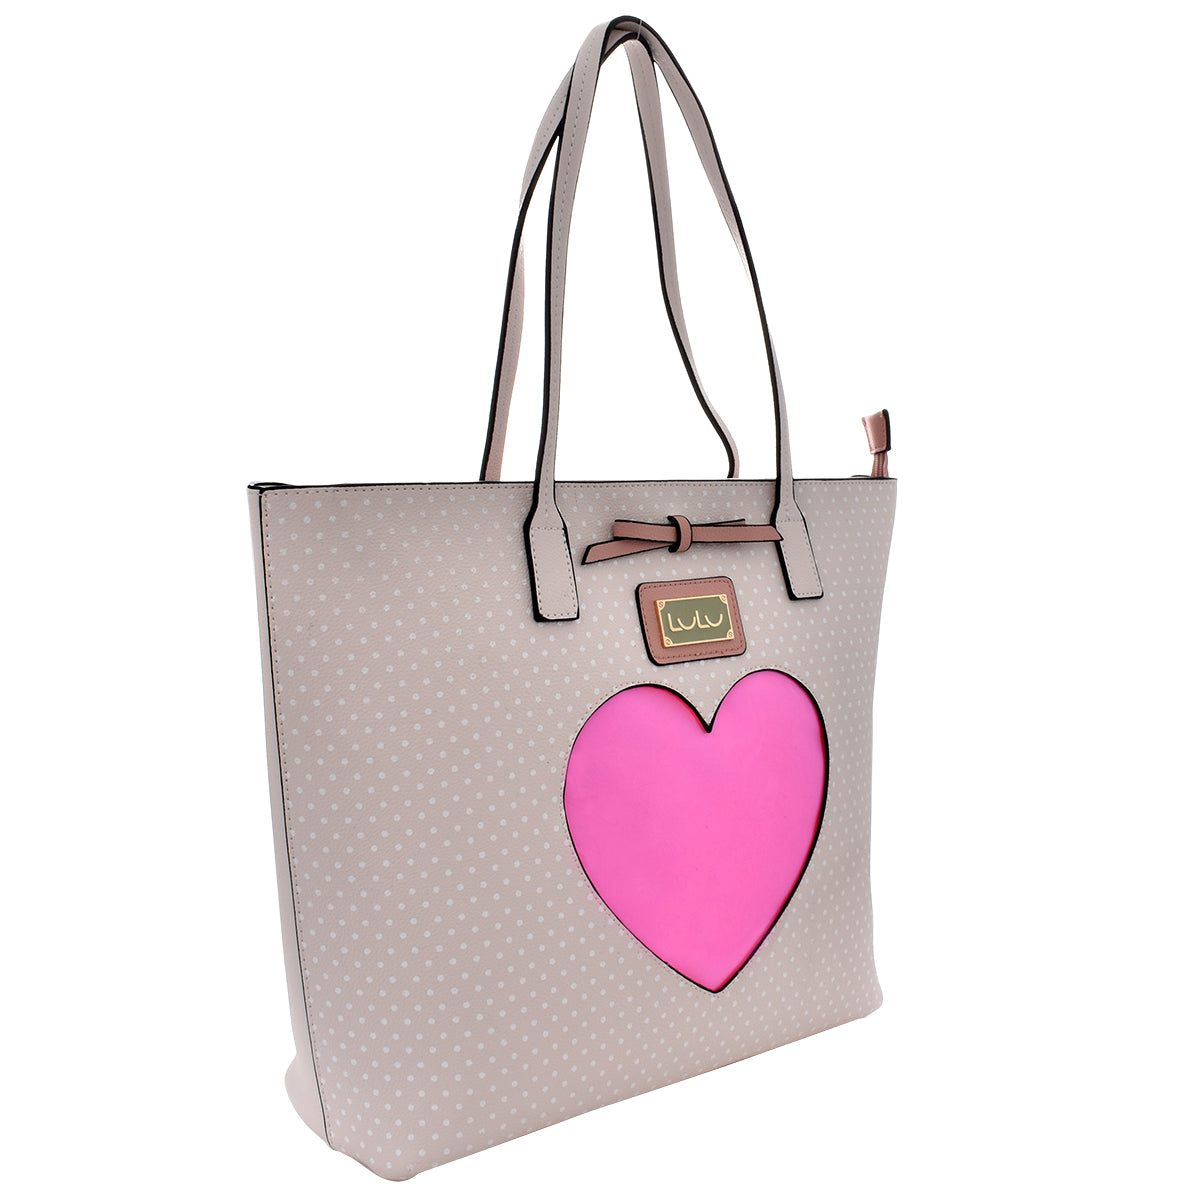 Bolsa [Lulu] tipo tote con diseño de corazón color marfil